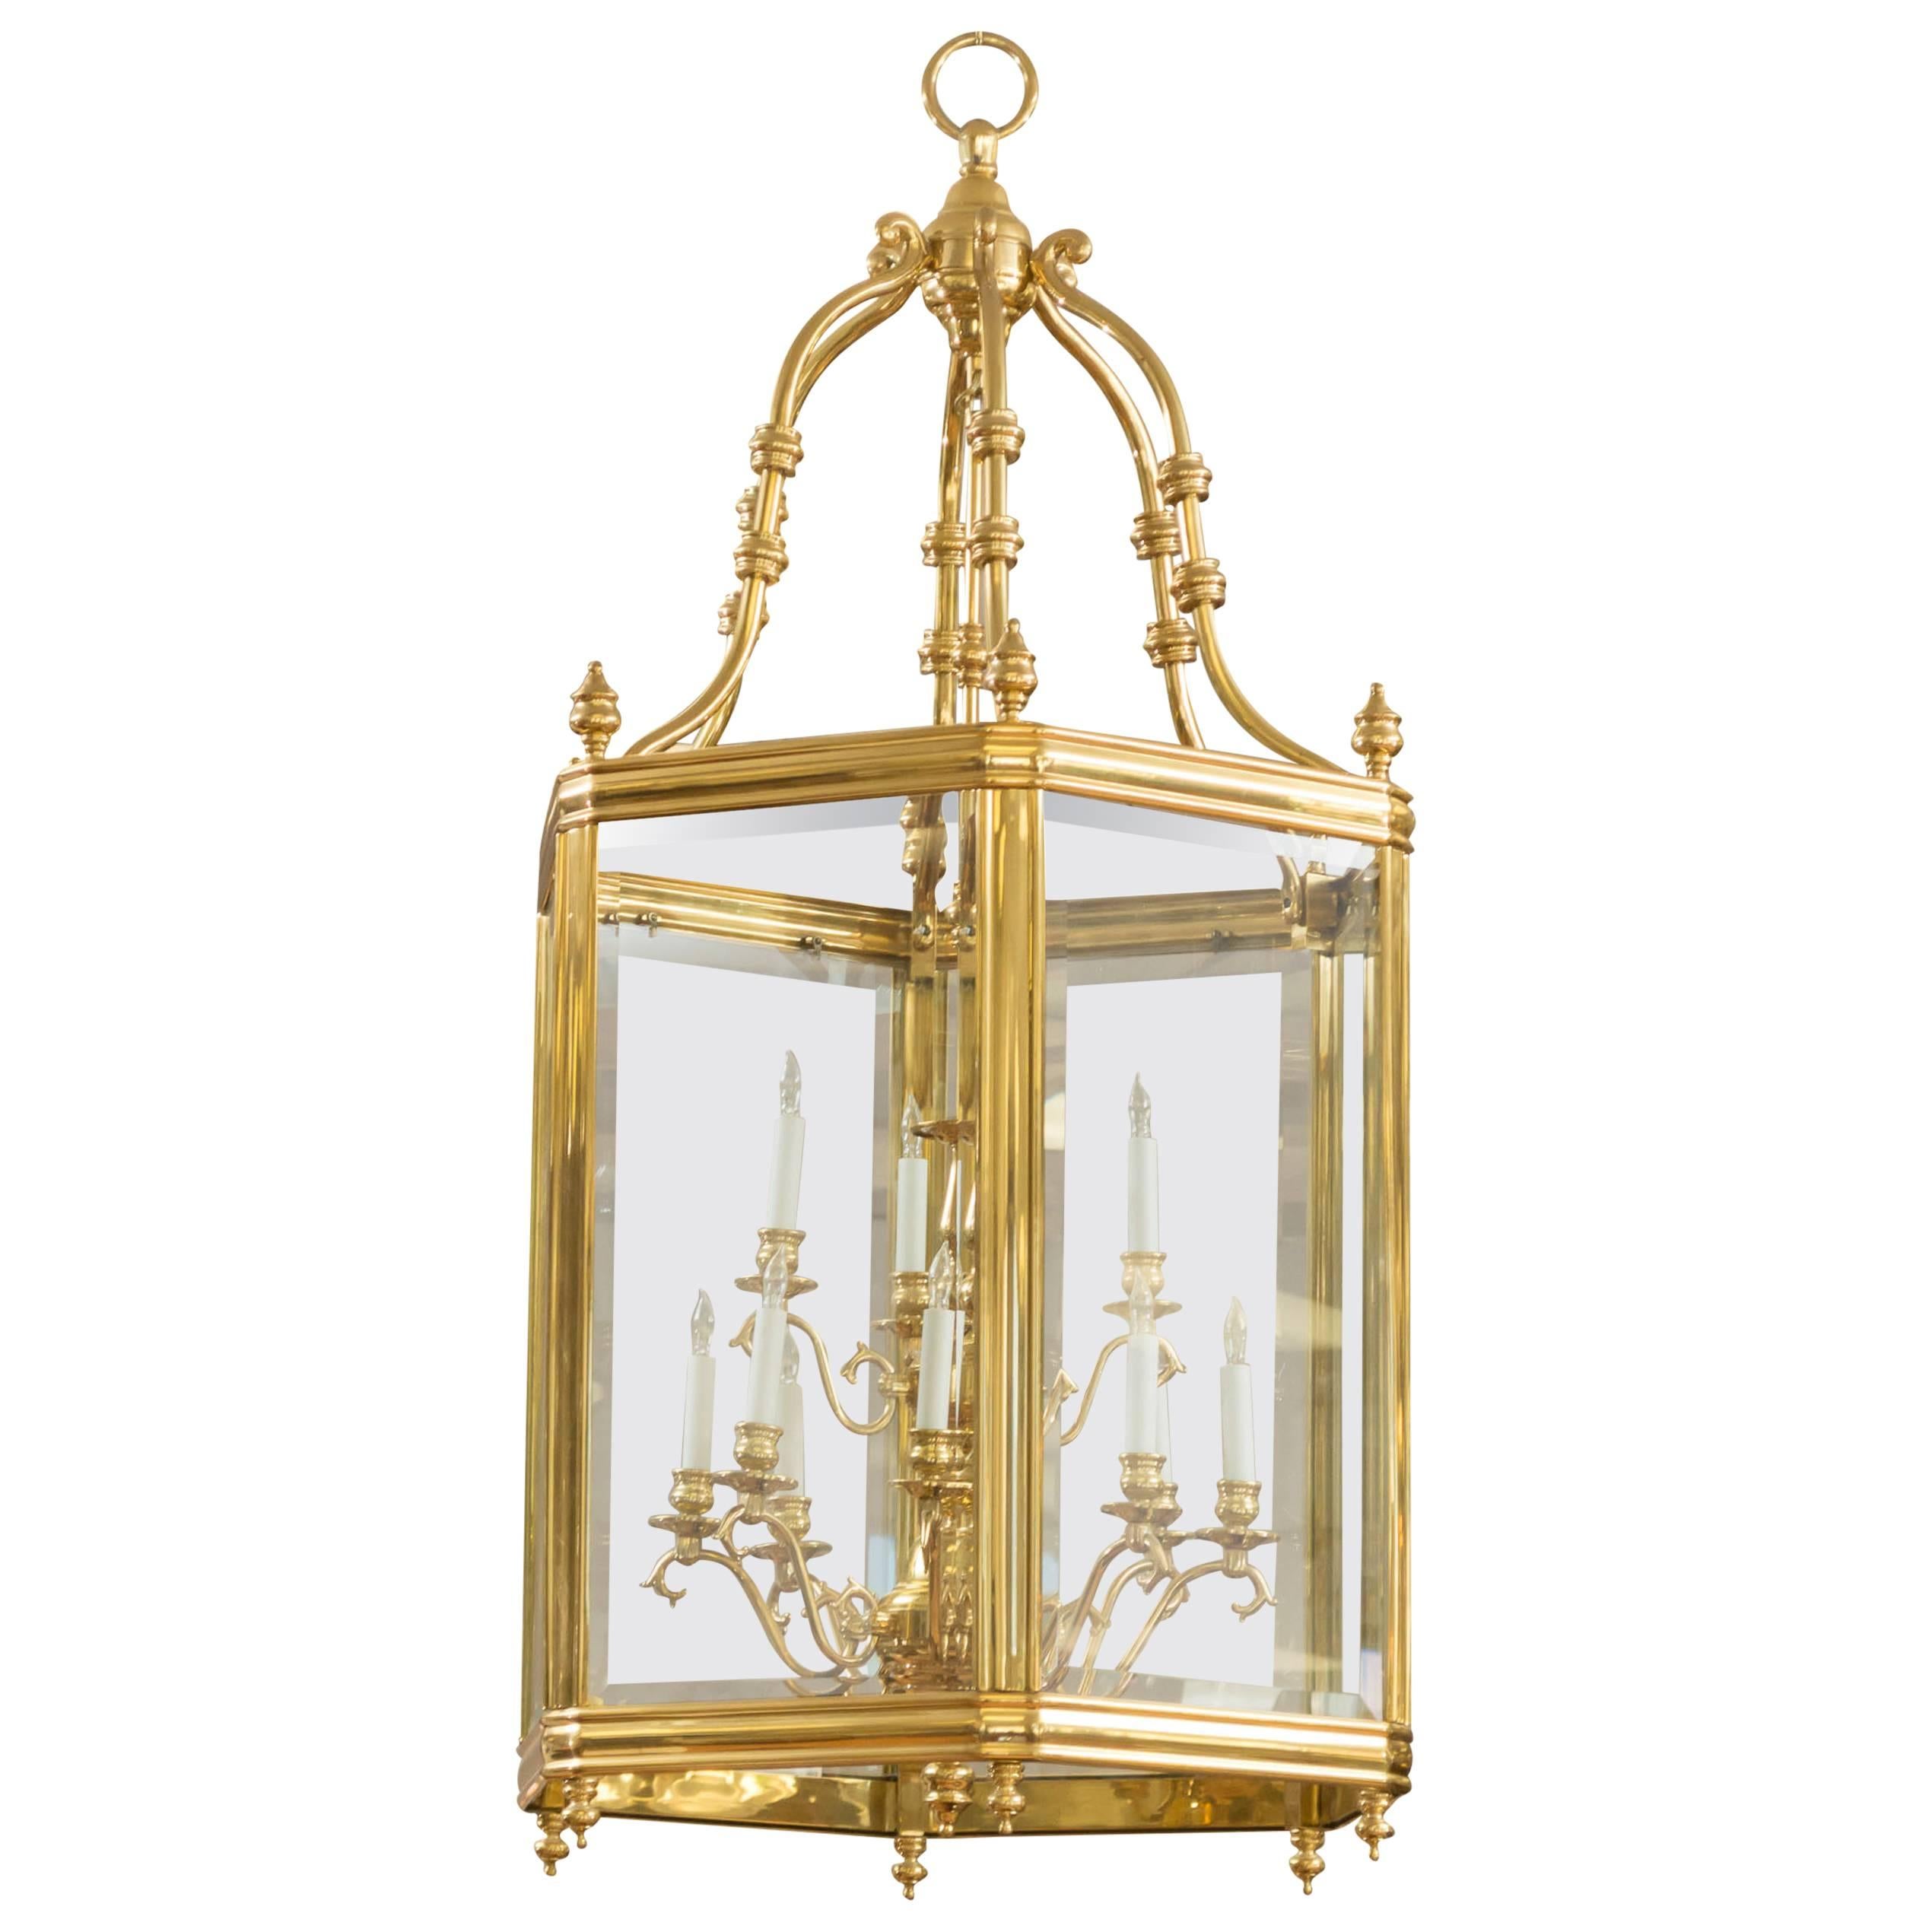 Monumental Brass and Glass Twelve-Light Foyer Pendant